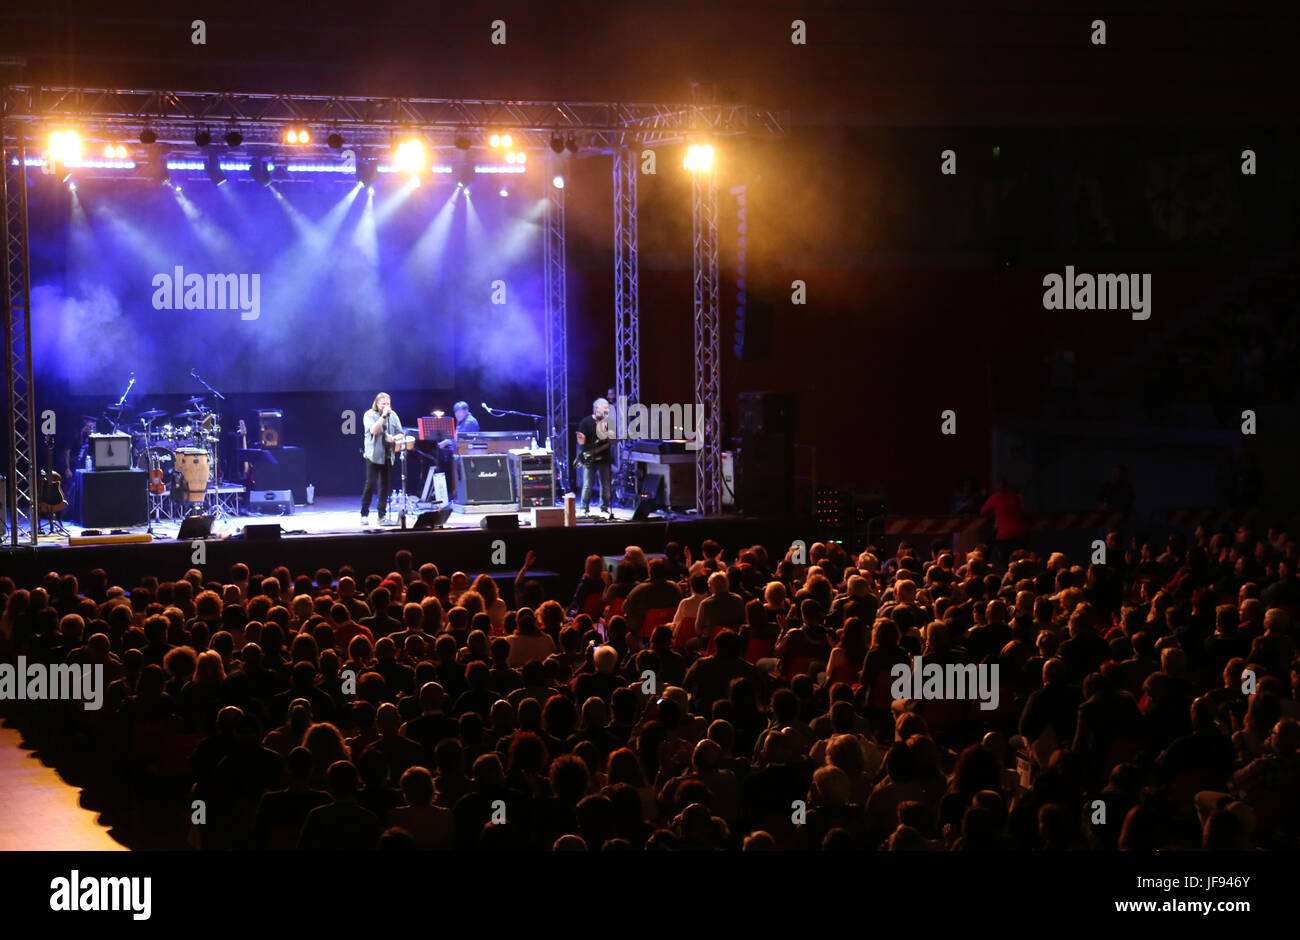 Bassano del Grappa, VI, Italien - 29. April 2017: Nomadi eine italienische berühmte Musikgruppe auf der Bühne während der live-Konzert mit dem Publikum Stockfoto